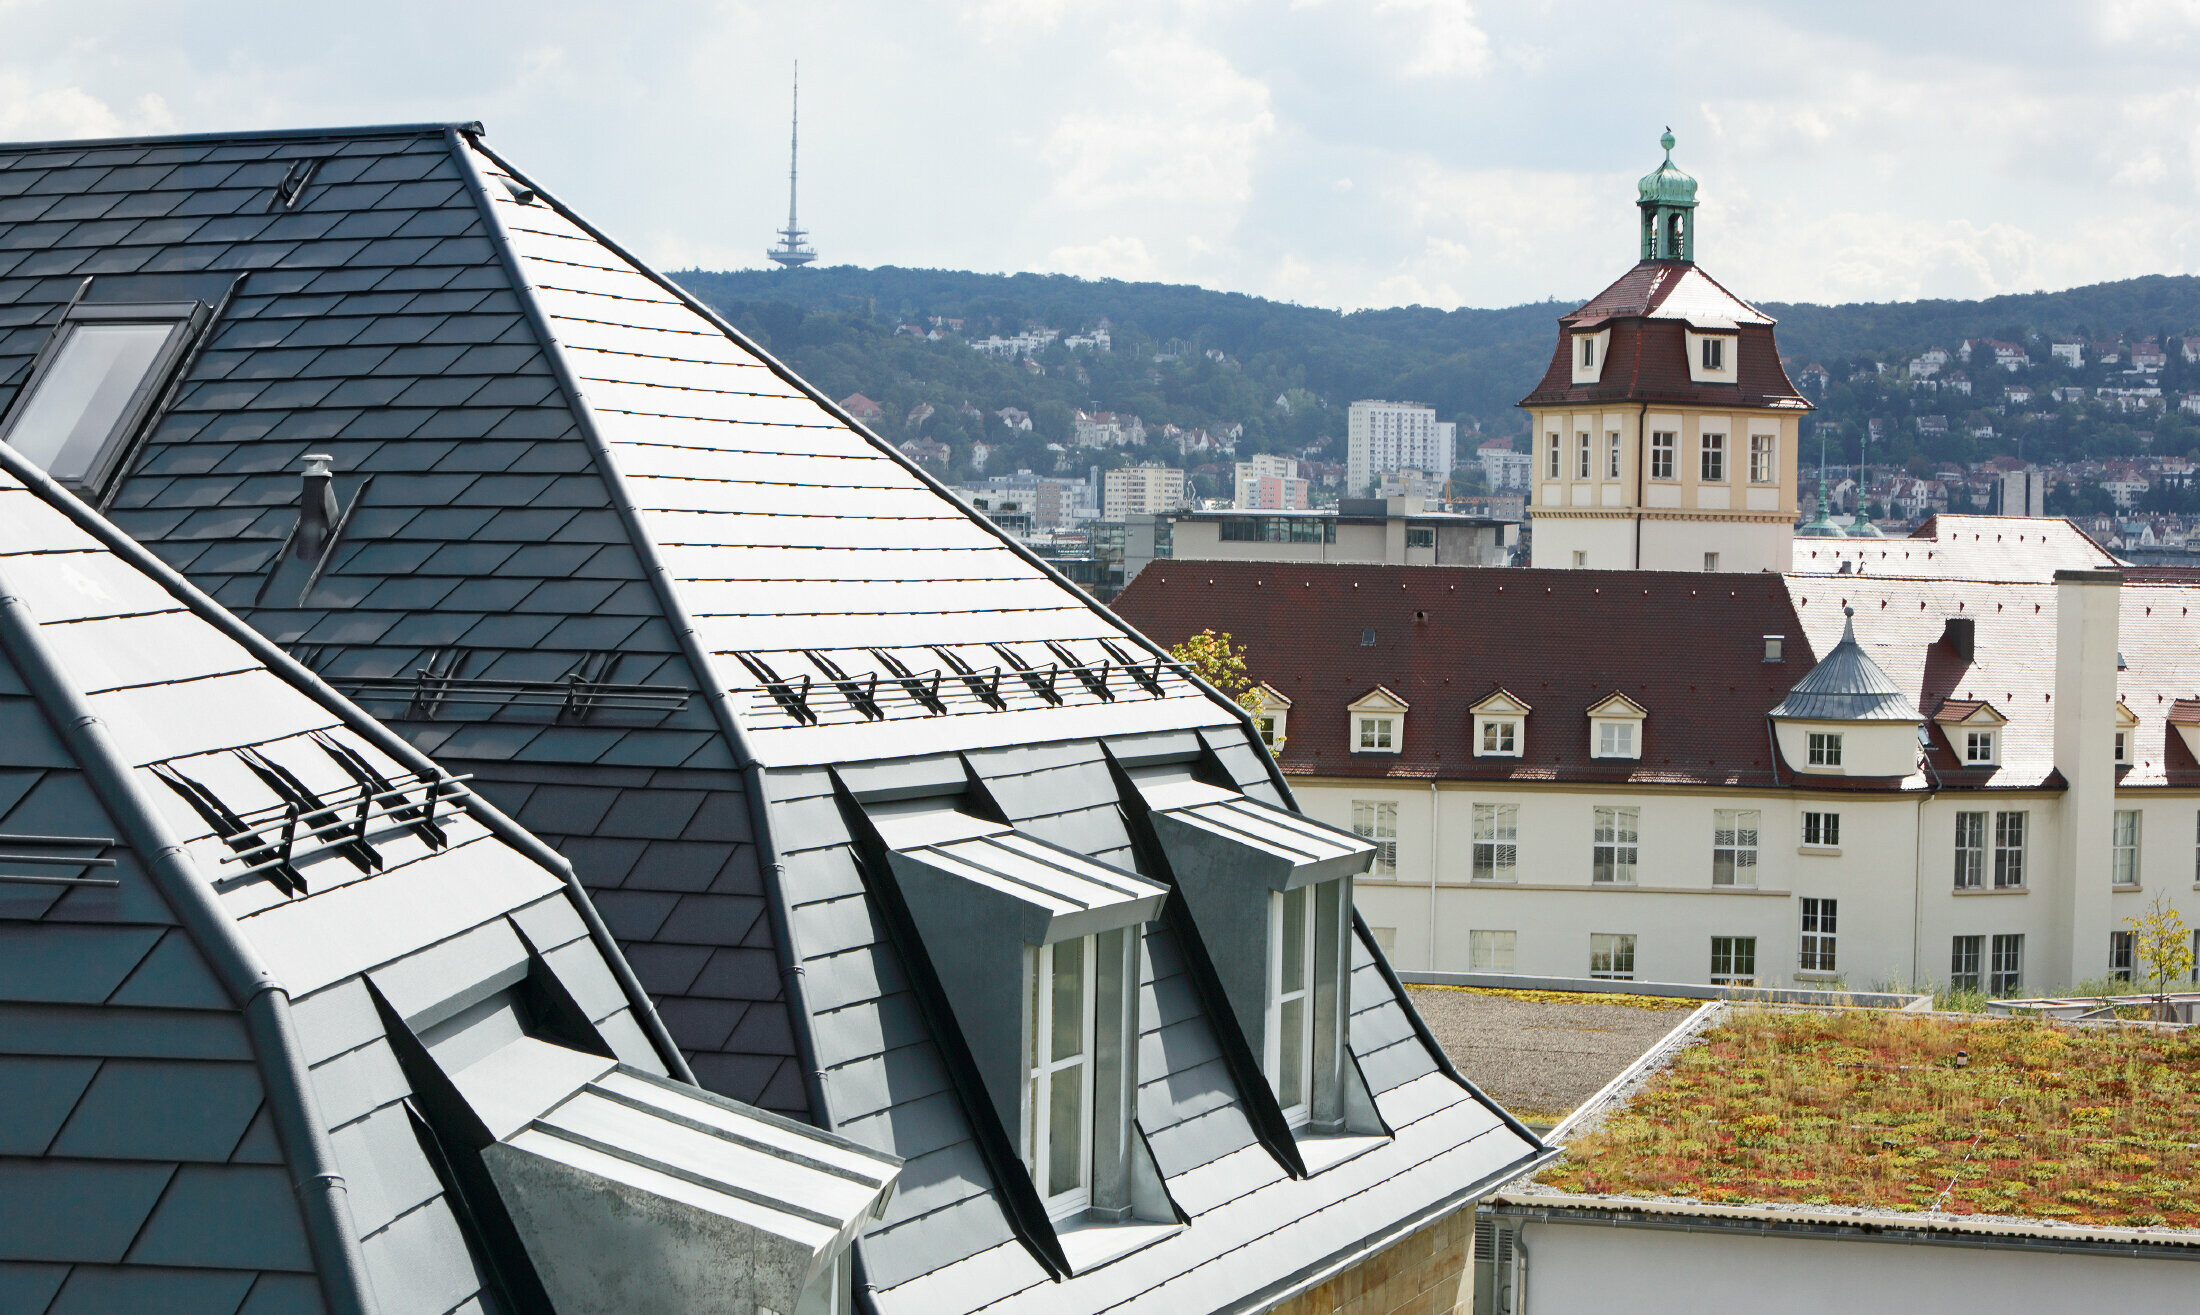 Oud stadshuis in Stuttgart met geknikt dak en veel dakkapellen, bedekt met de aluminium schindels van PREFA in P.10 antraciet